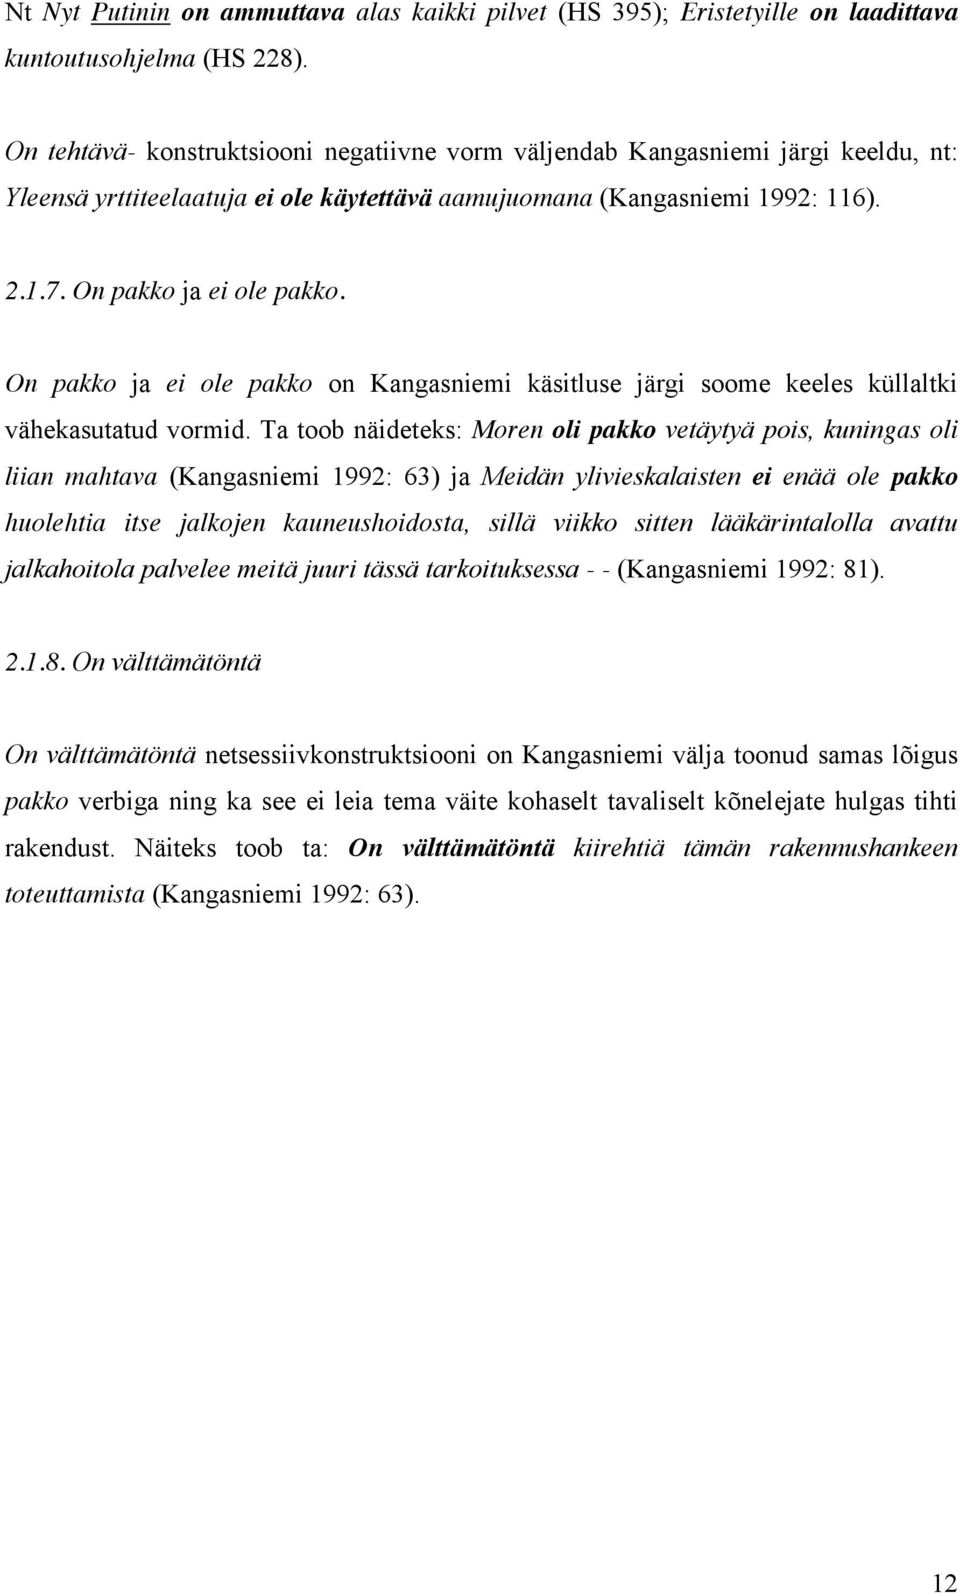 On pakko ja ei ole pakko on Kangasniemi käsitluse järgi soome keeles küllaltki vähekasutatud vormid.